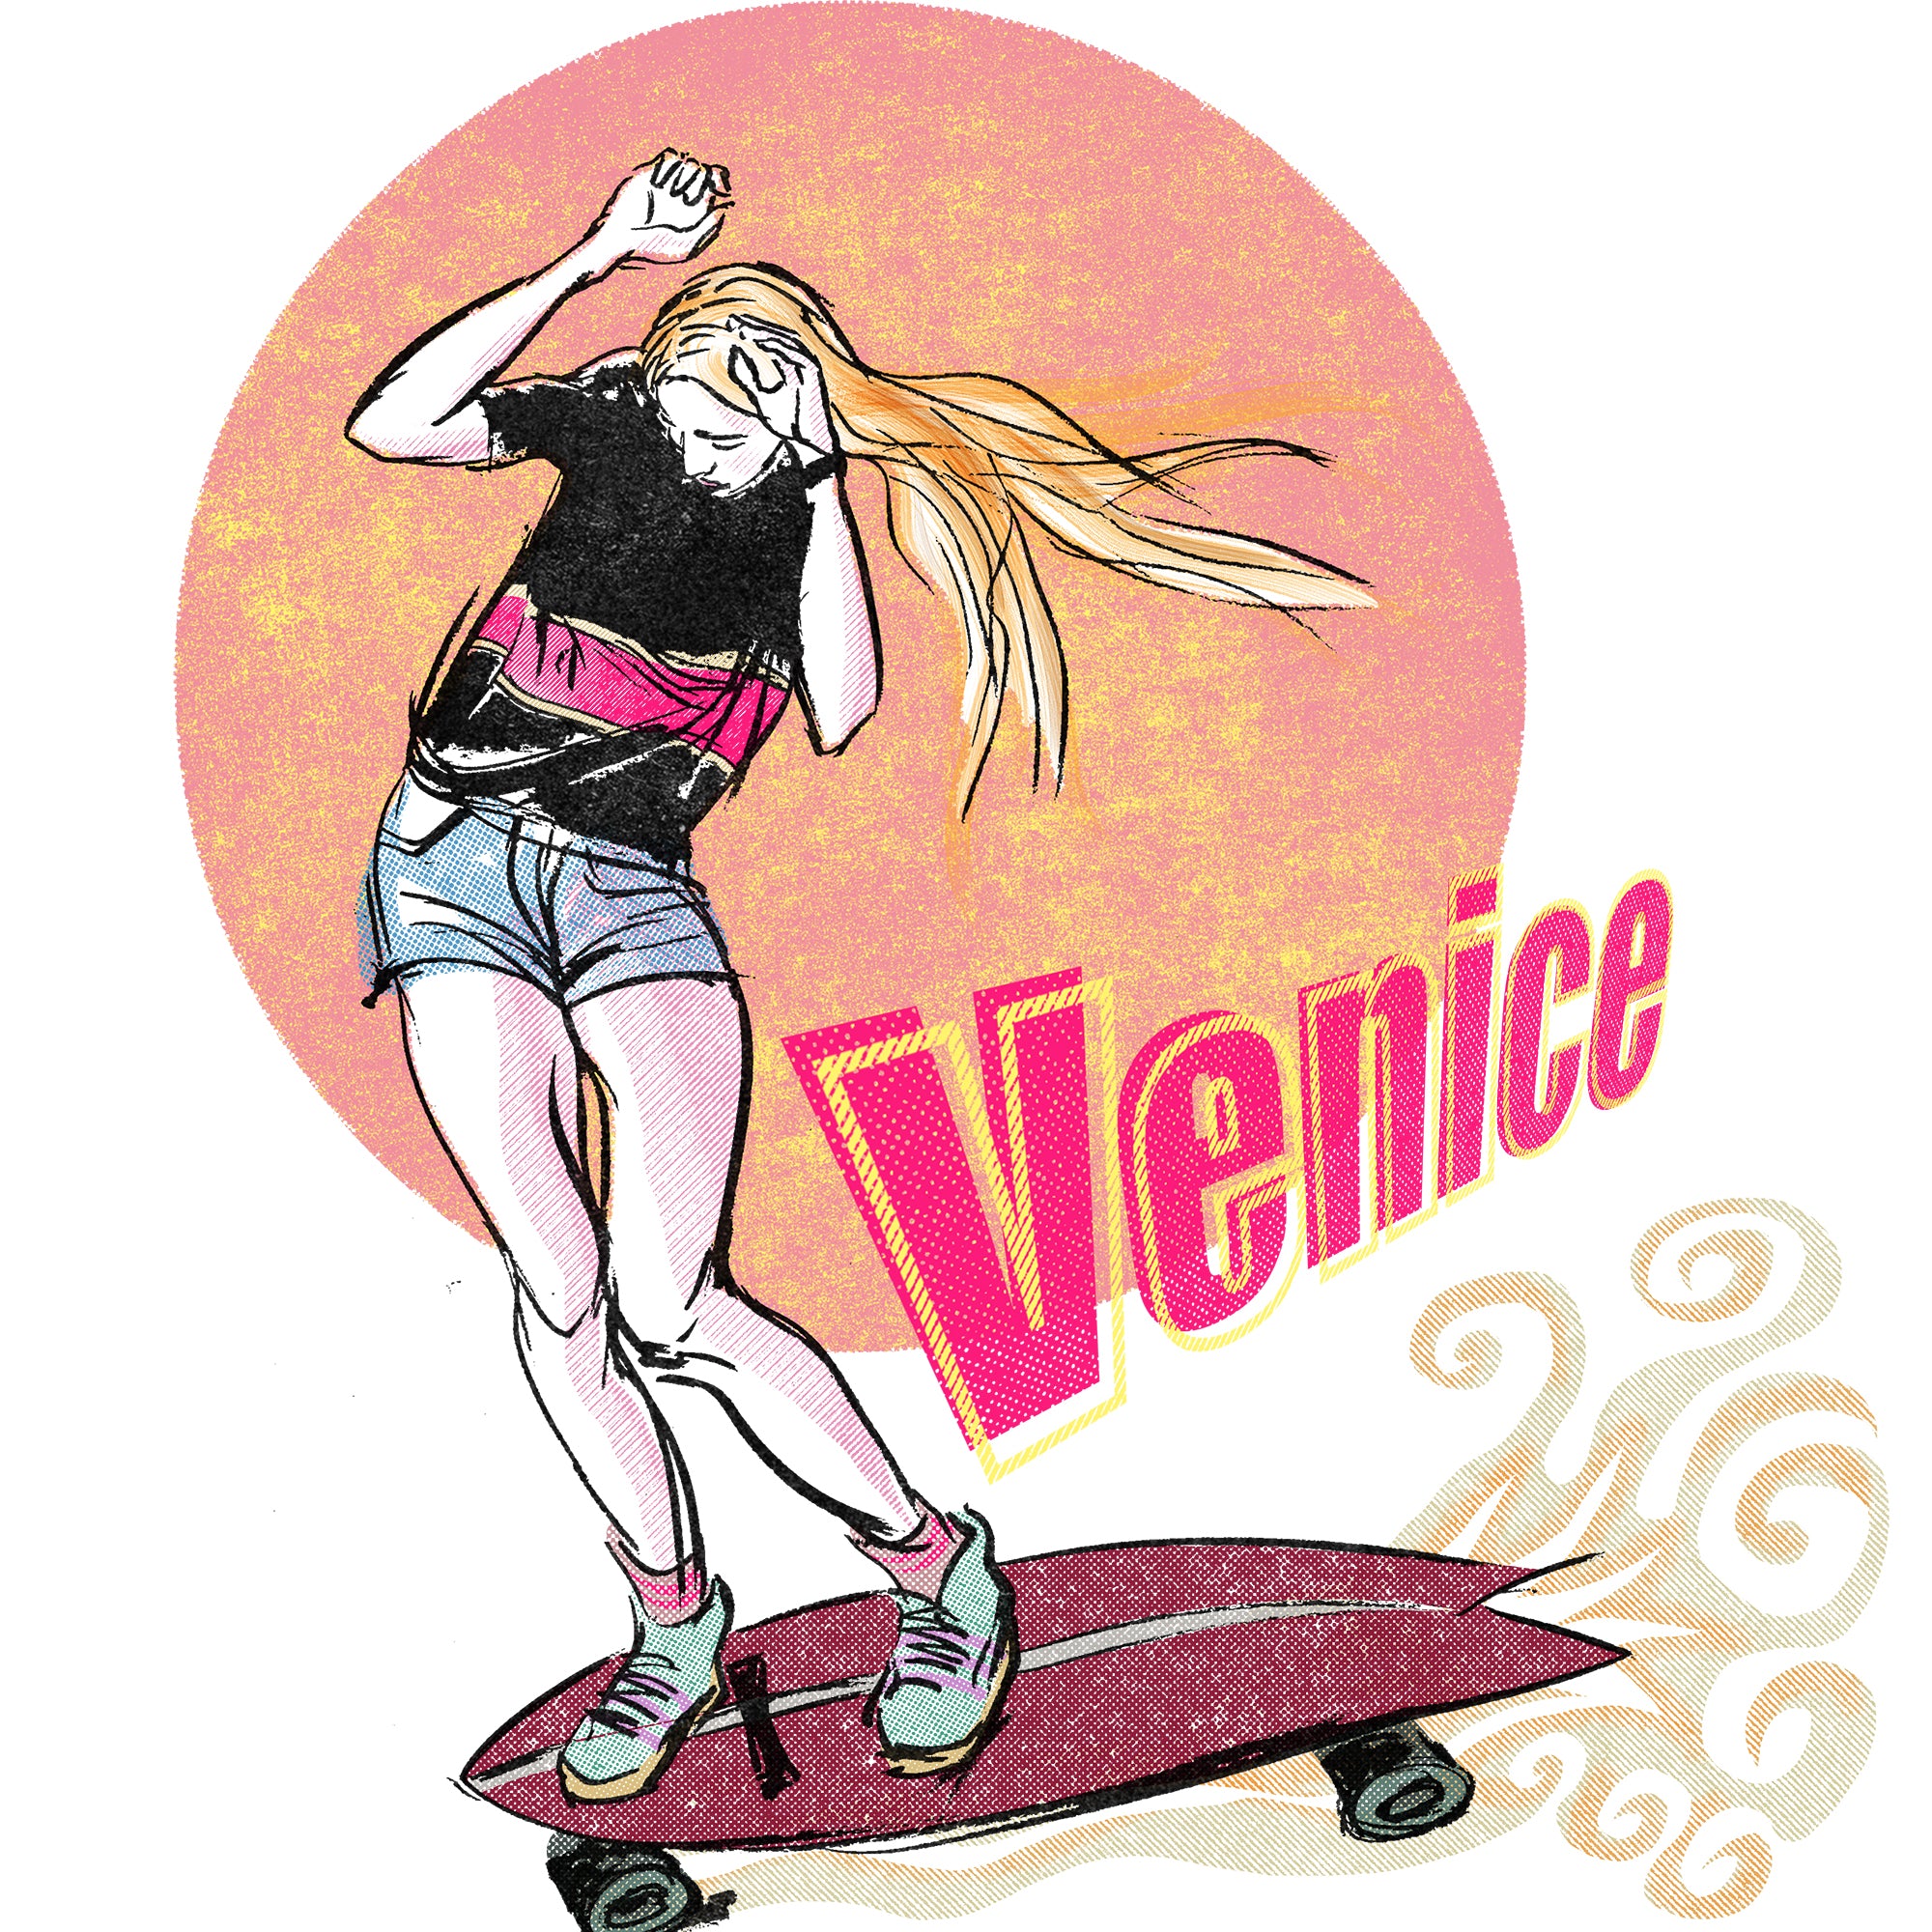 Venecia, Camiseta entallada mujer